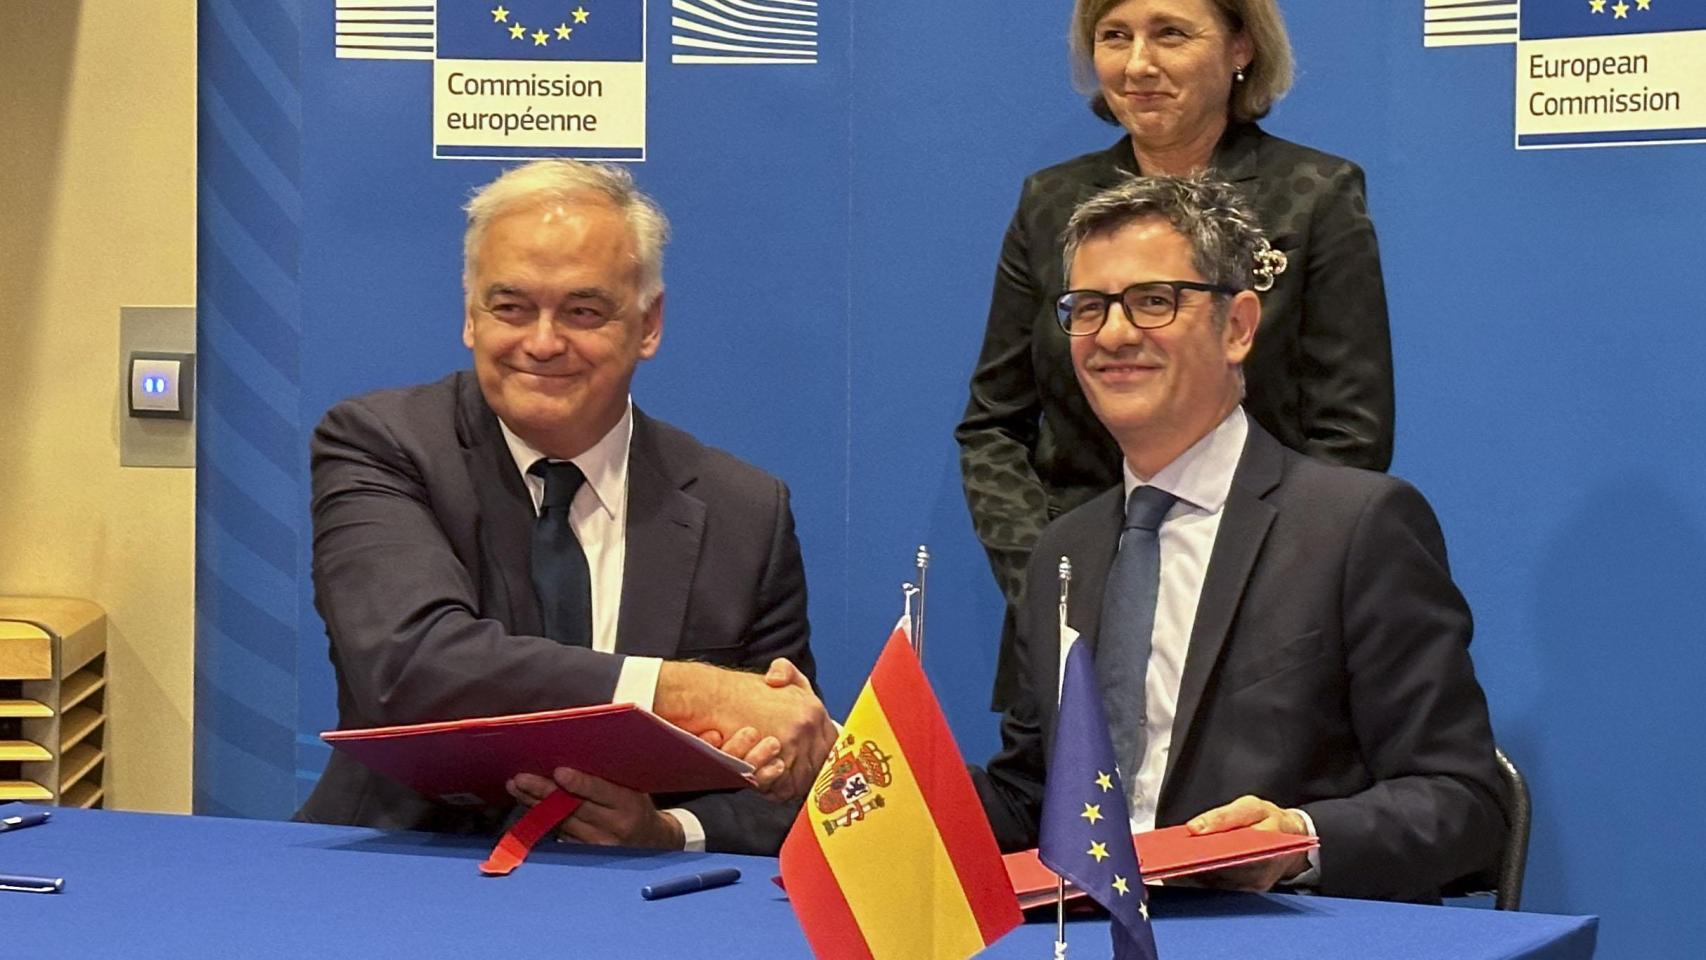 Félix Bolaños y Esteban González Pons firman el acuerdo para la renovación del CGPJ en presencia de la vicepresidenta de la Comisión Europea, Věra Jourová.